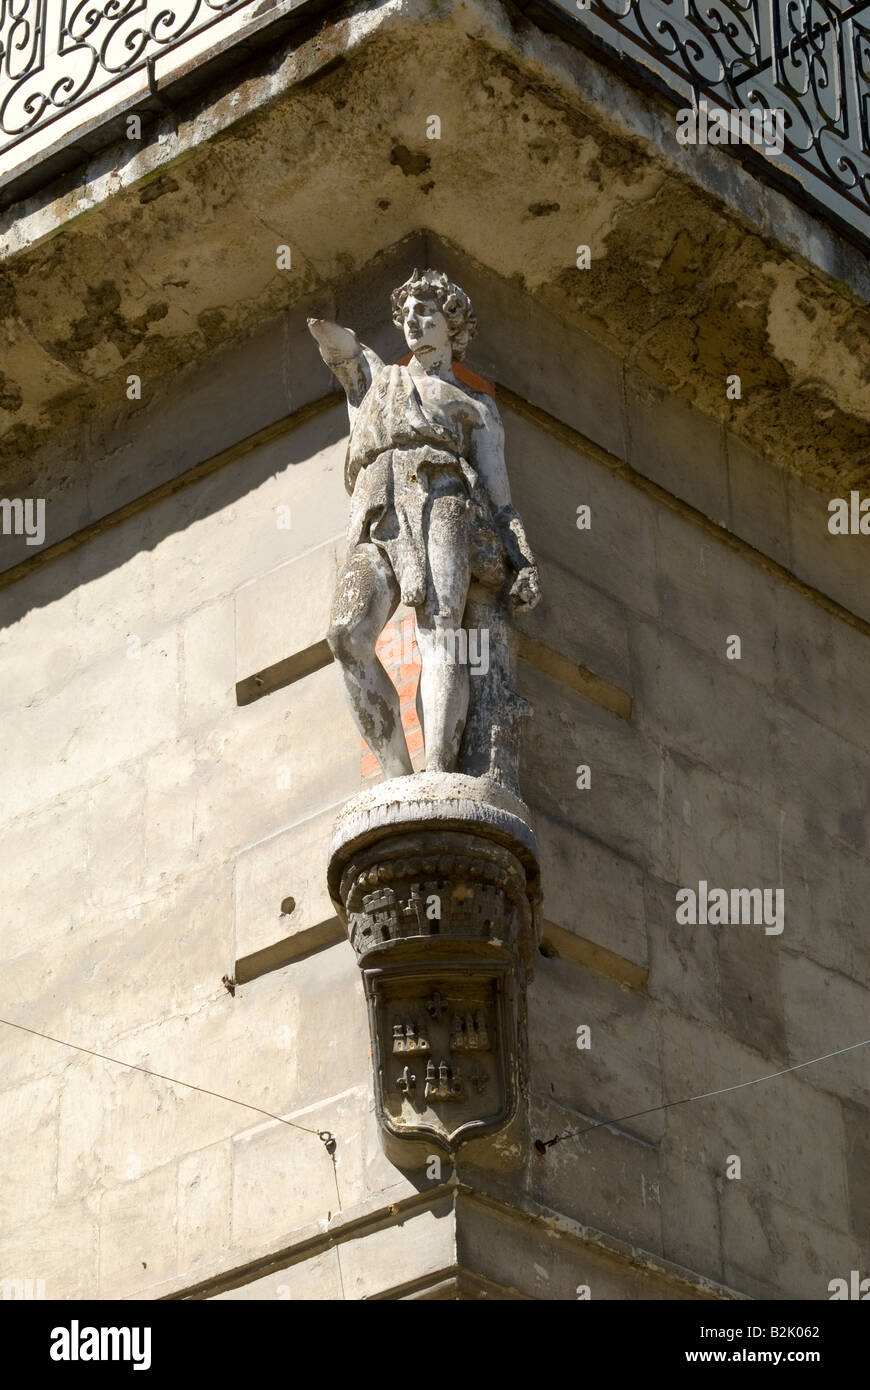 Statue au-dessus de coin de rue, Chinon, France. Banque D'Images